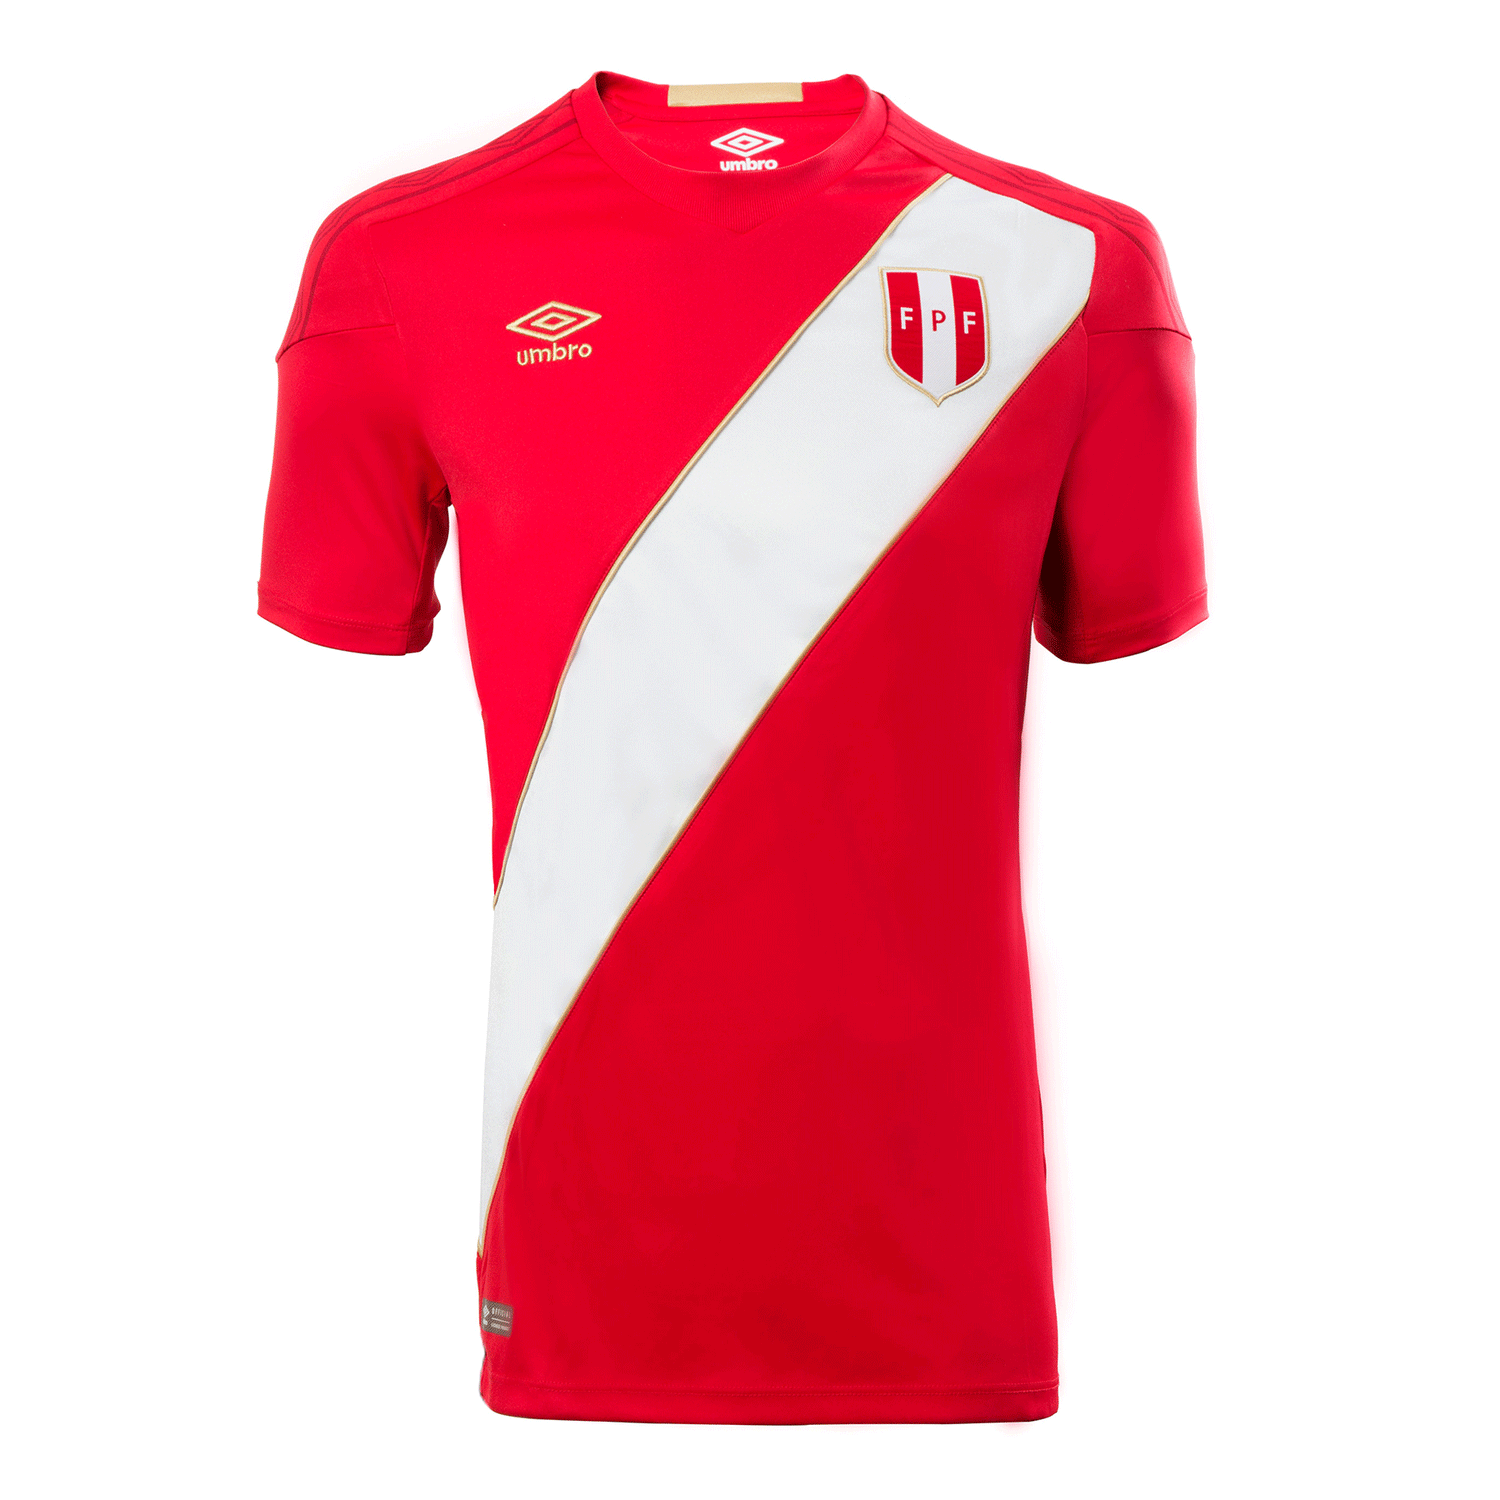 UMBRO Peru 2018 Away S/S Jersey